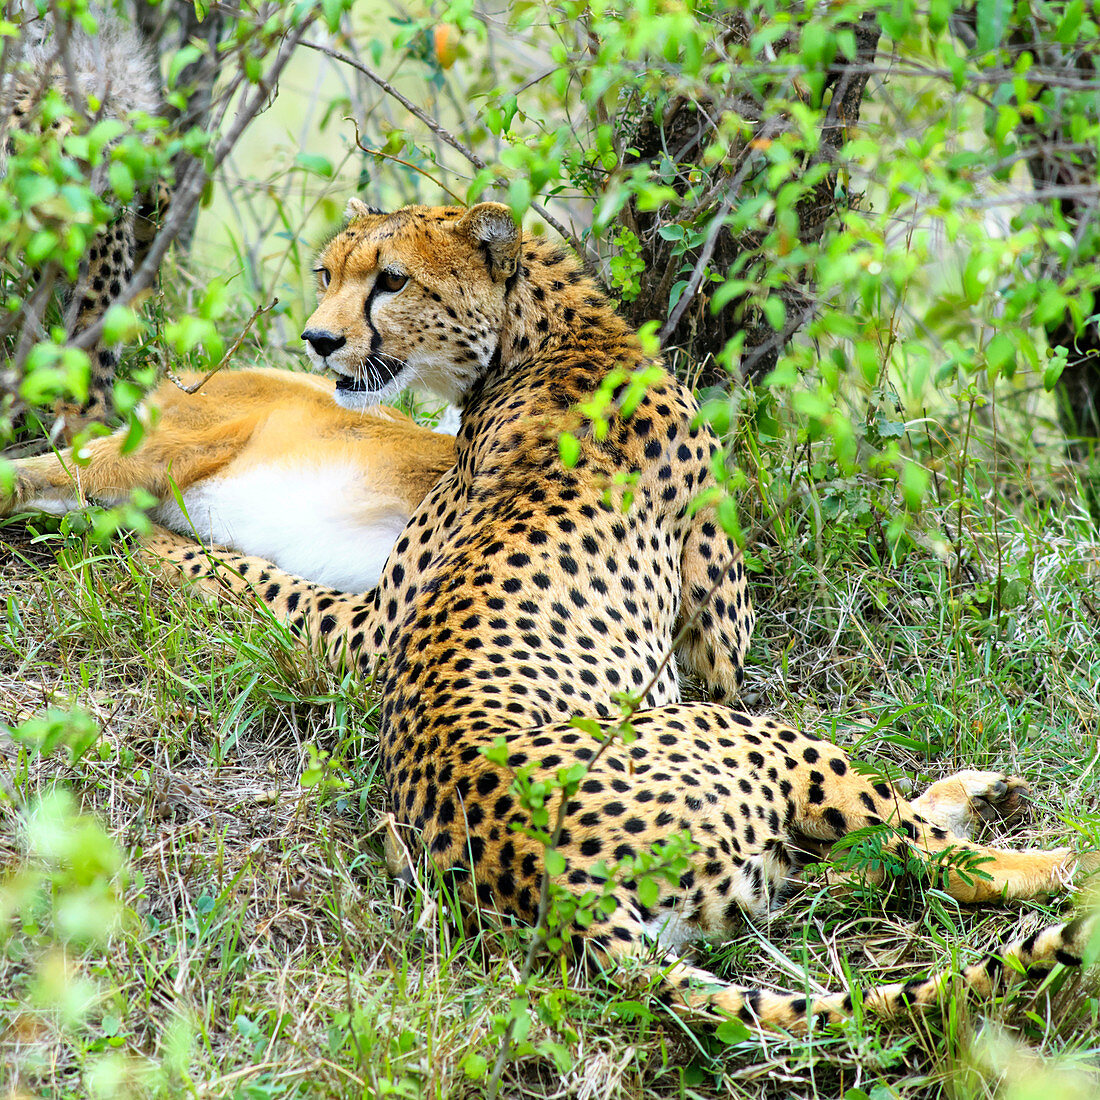 Cheetah with its kill